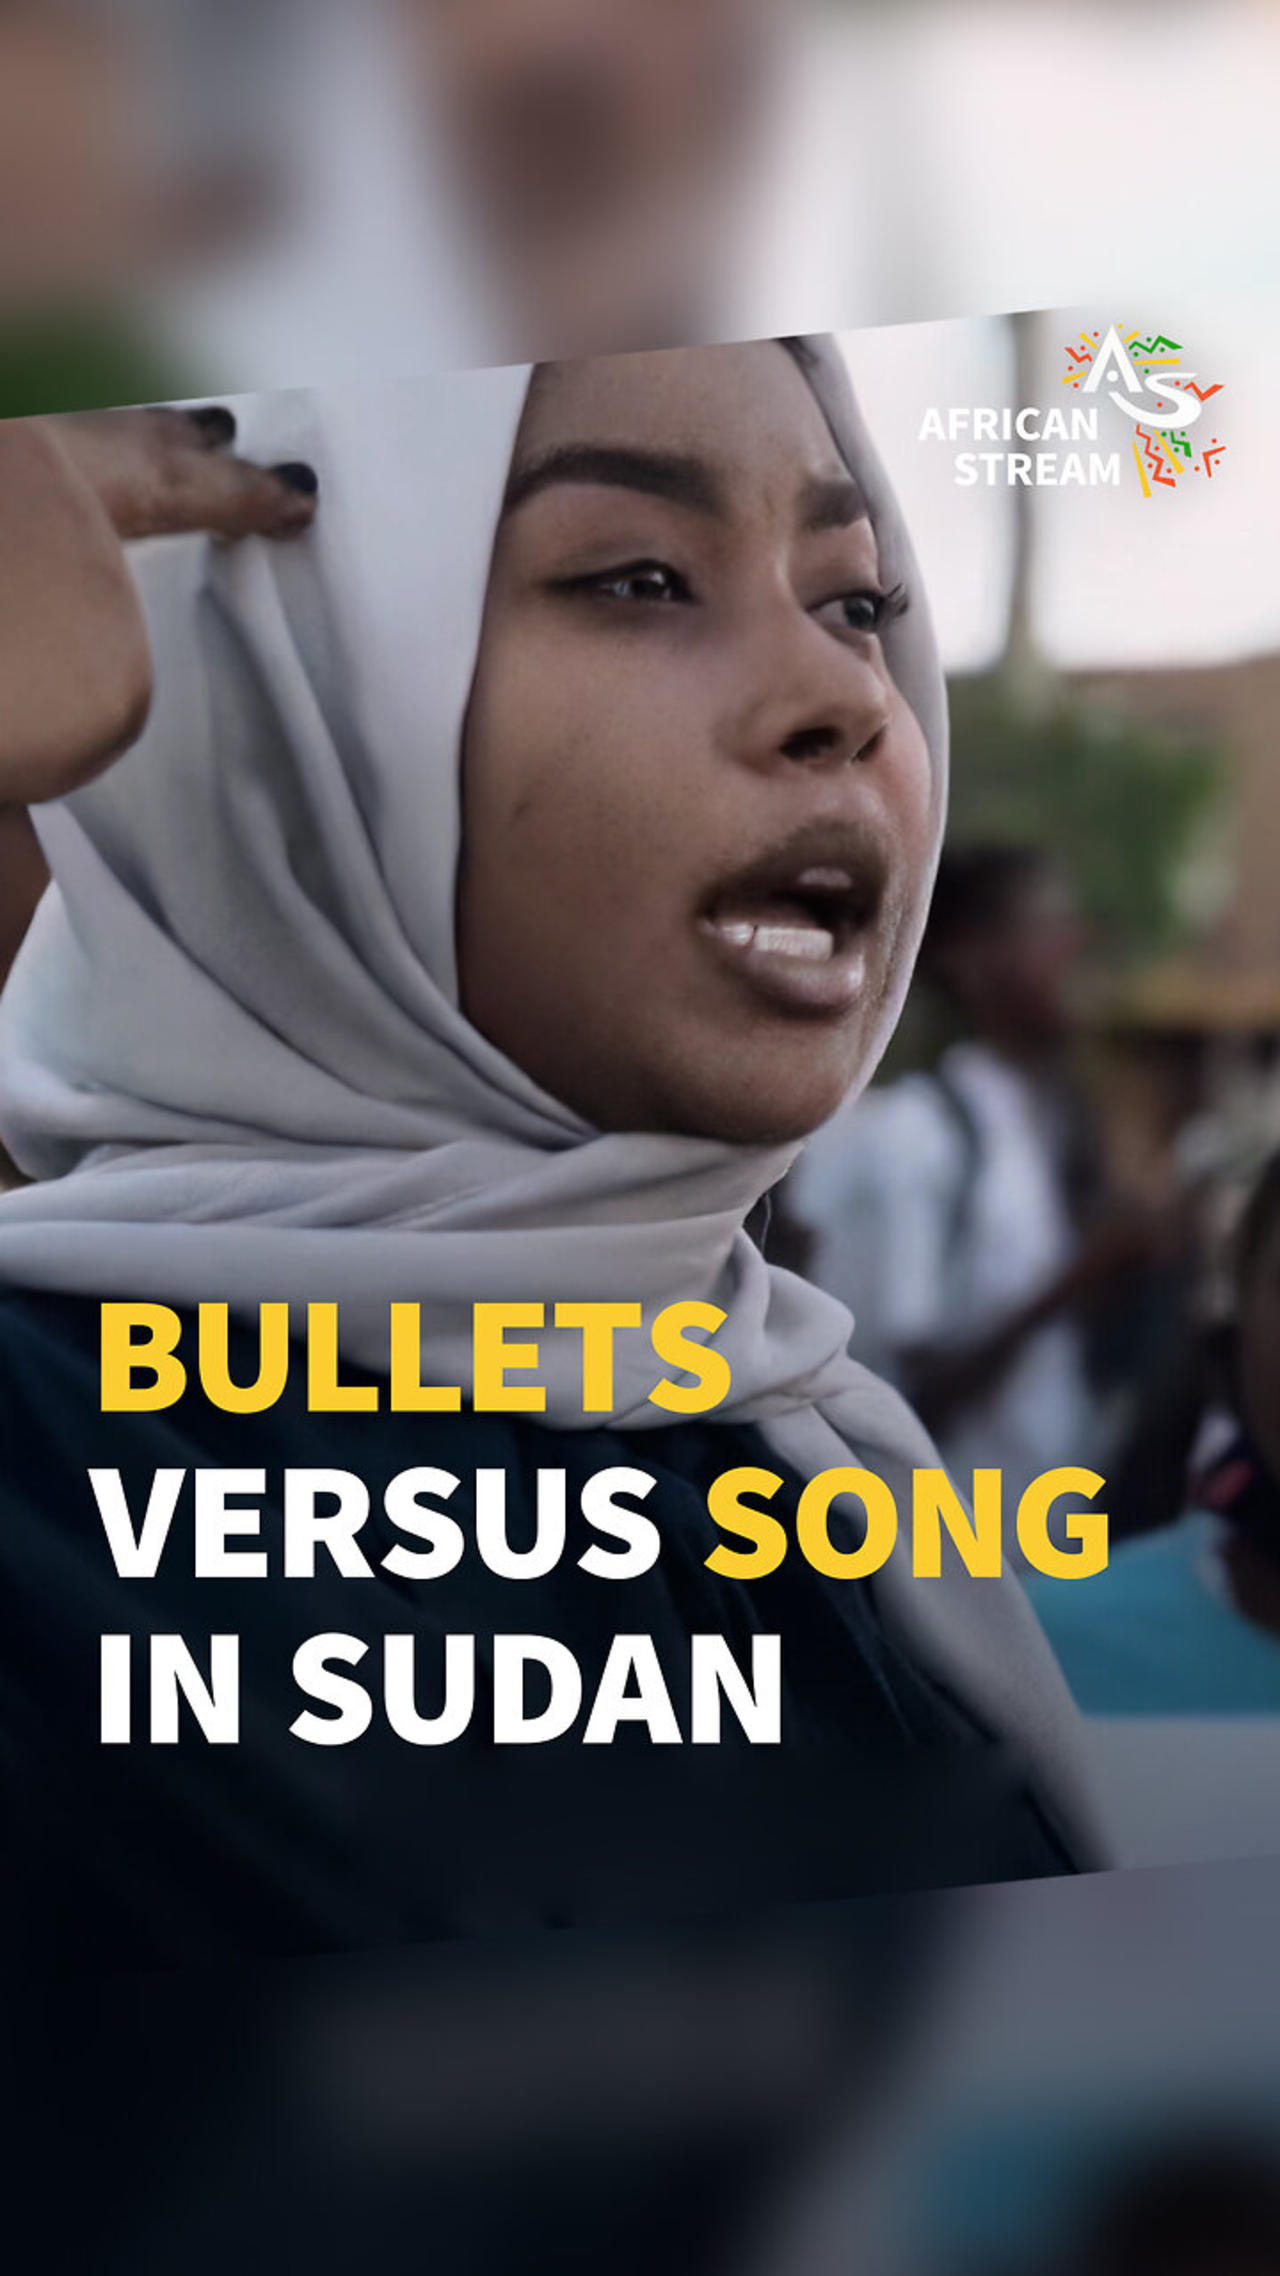 BULLETS VERSUS SONG IN SUDAN